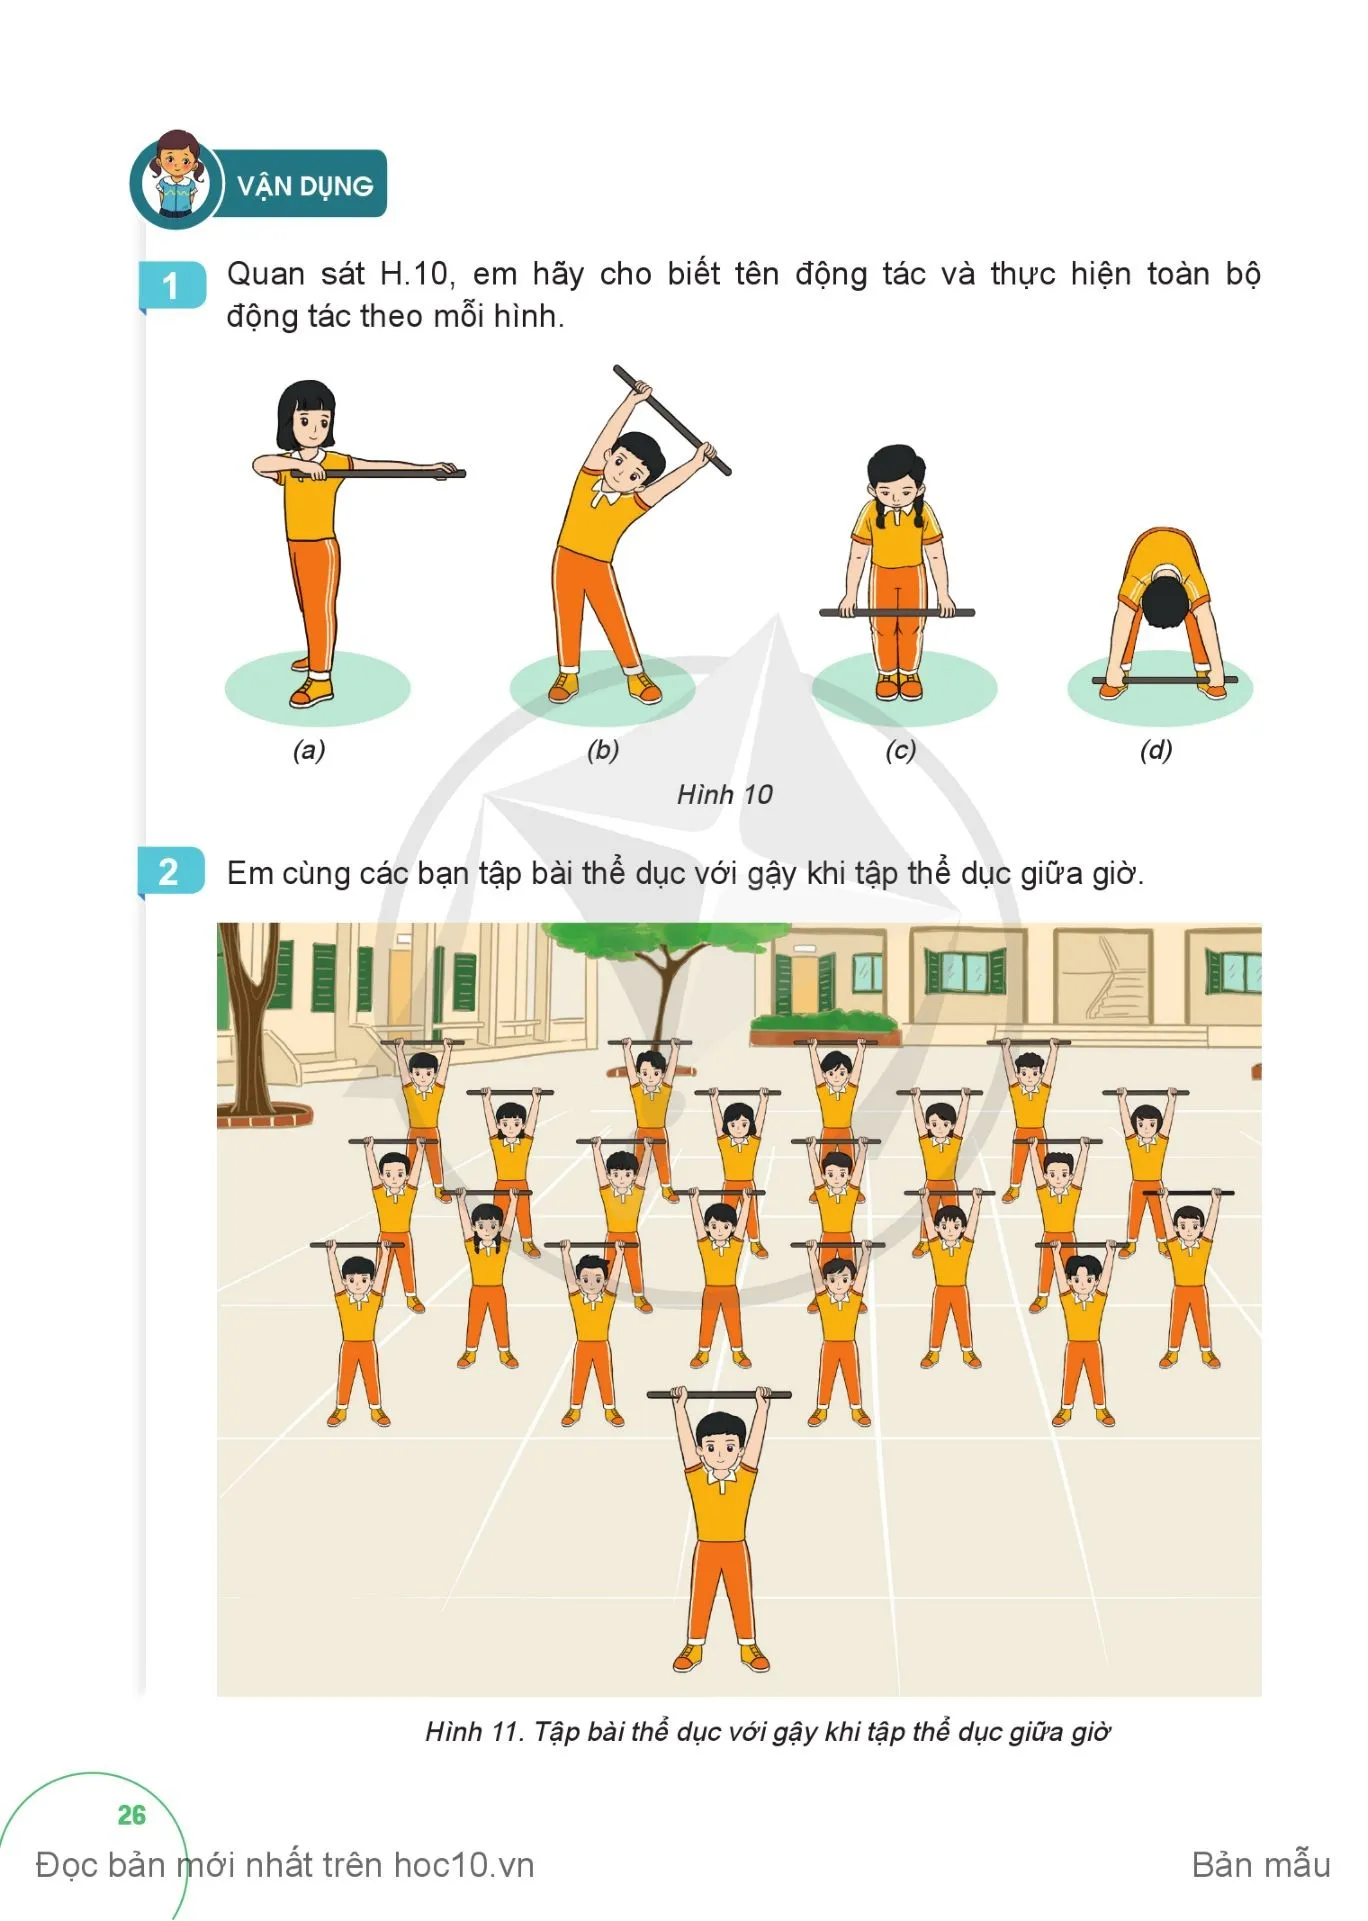 Bài 1. Động tác vươn thở, động tác lườn, động tác vặn mình và động tác bụng với gậy